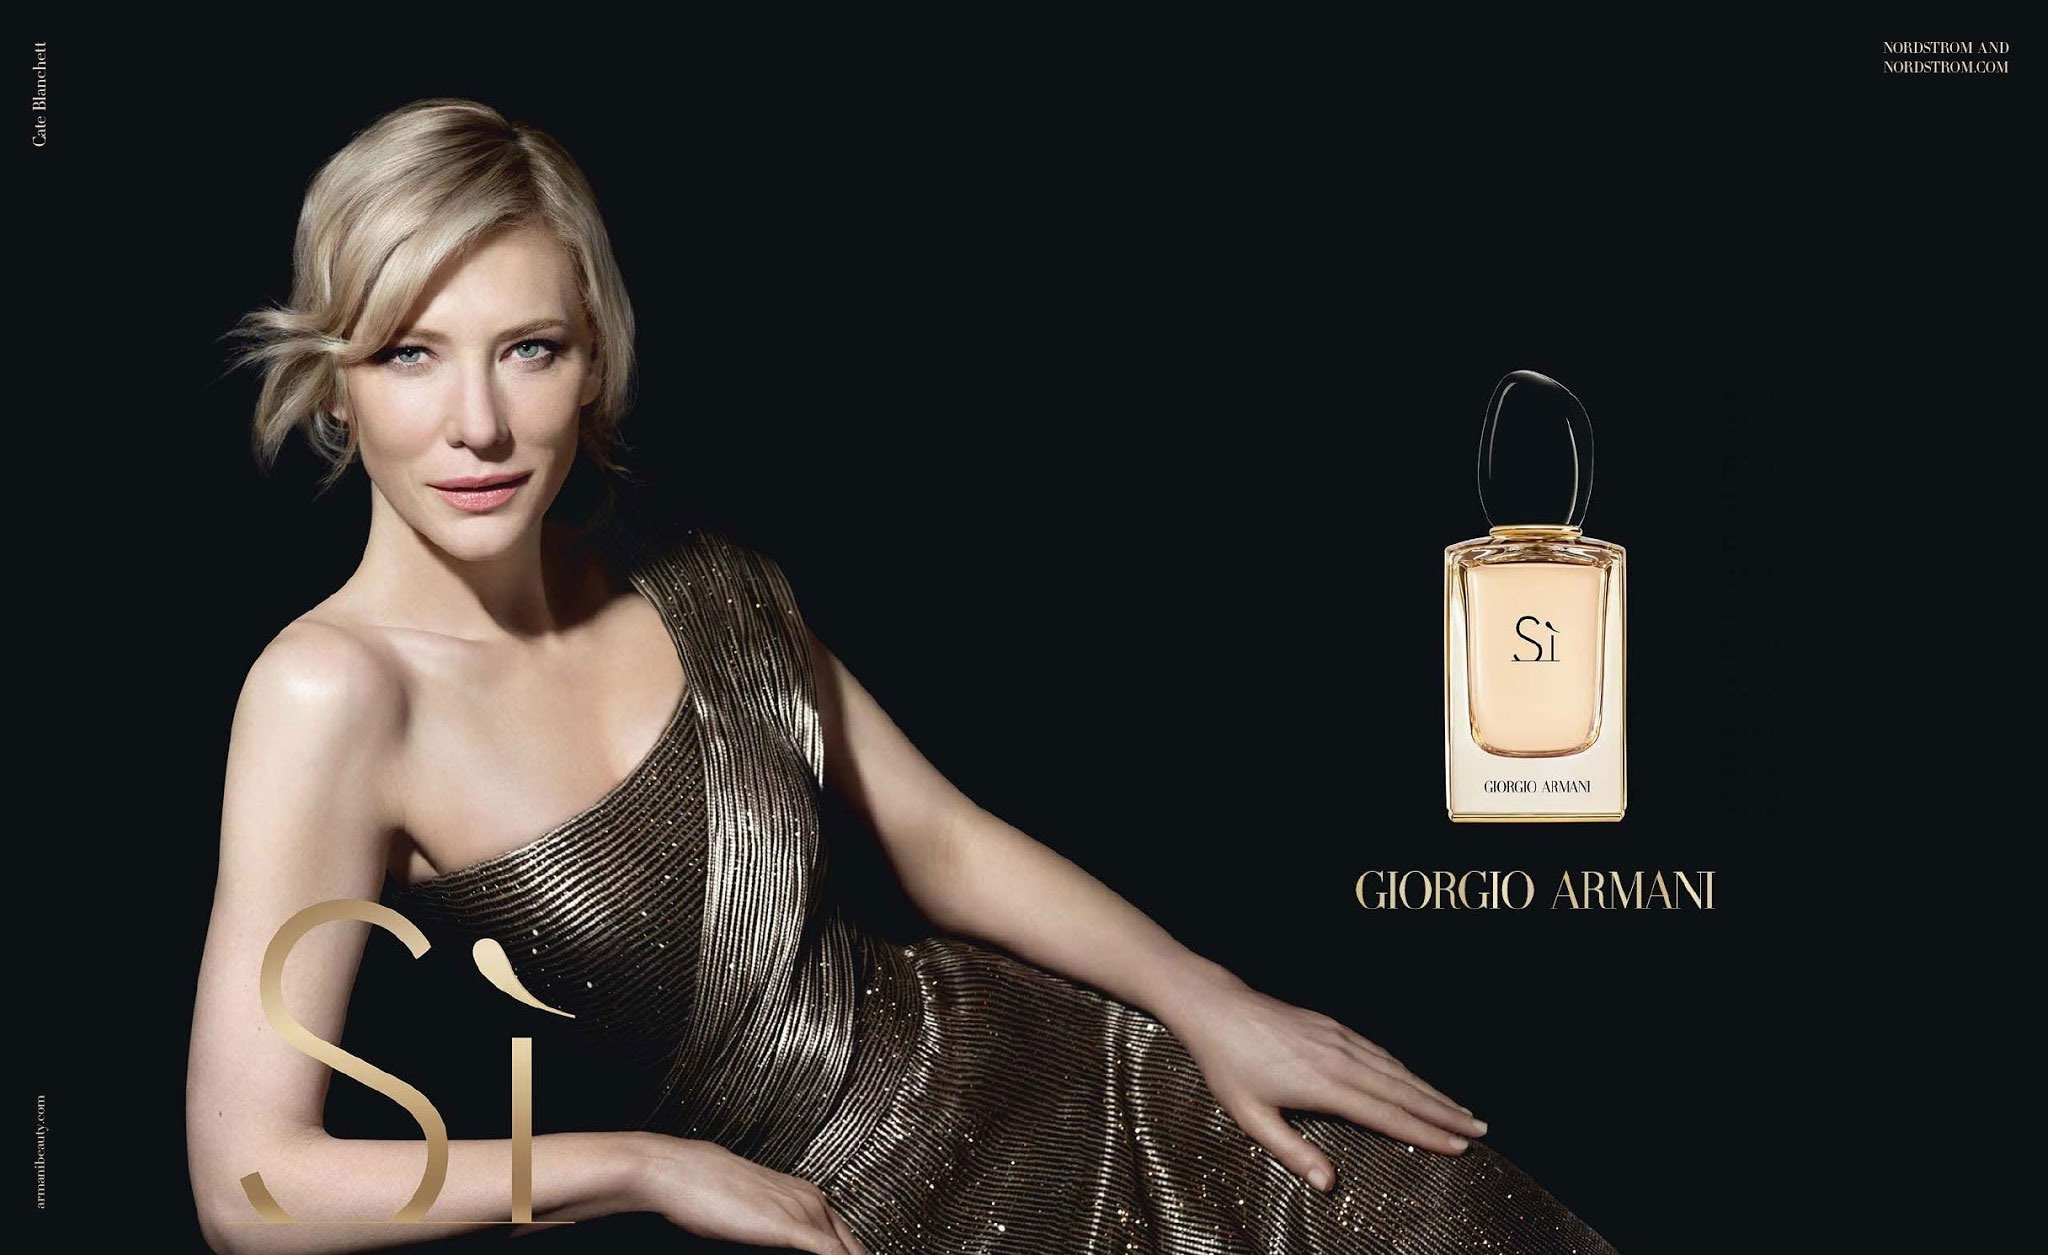 Kết quả hình ảnh cho Si Eau de parfum Giorgio Armani poster